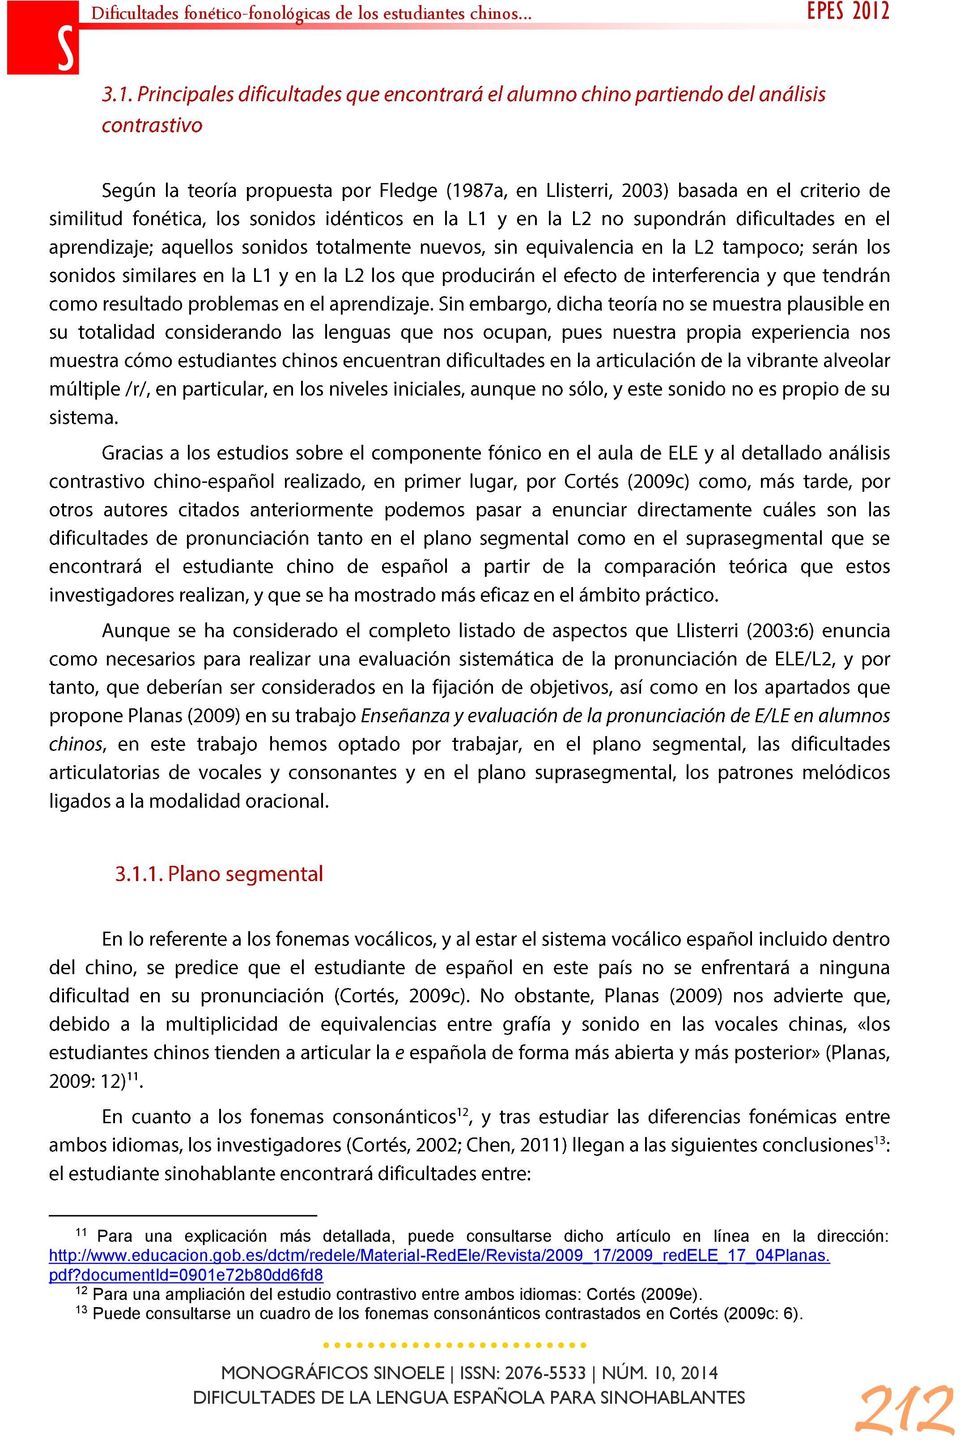 documentid=0901e72b80dd6fd8 12 Para una ampliación del estudio contrastivo entre ambos idiomas: Cortés